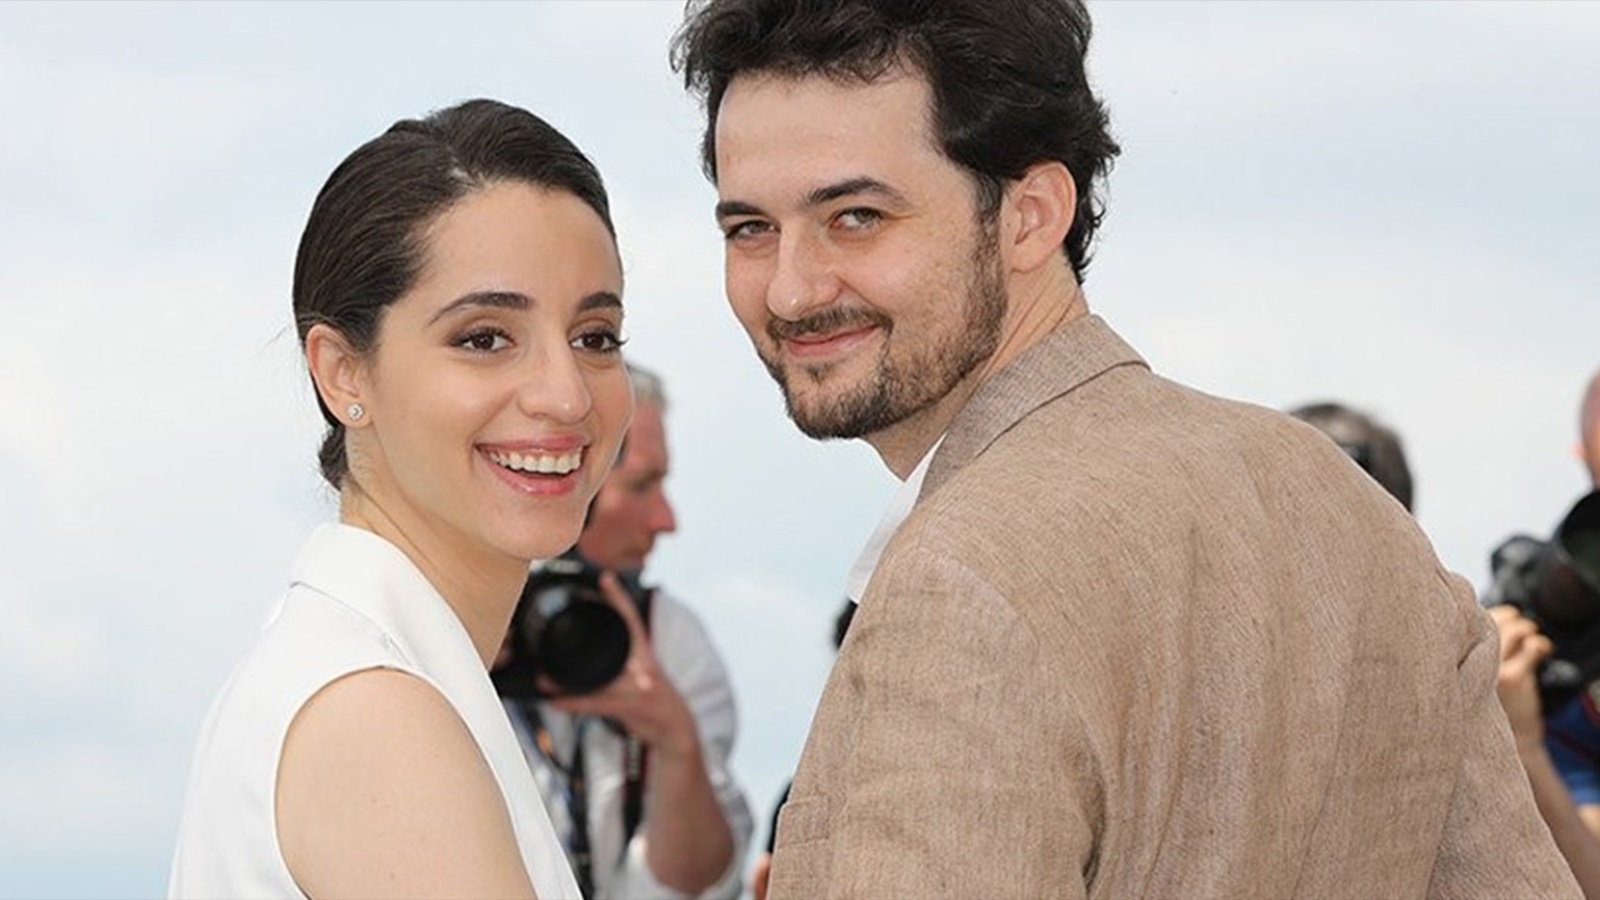 أبو بكر شوقي وزوجته دينا الامام منتجة الفيلم في مهرجان كان (مواقع التواصل)